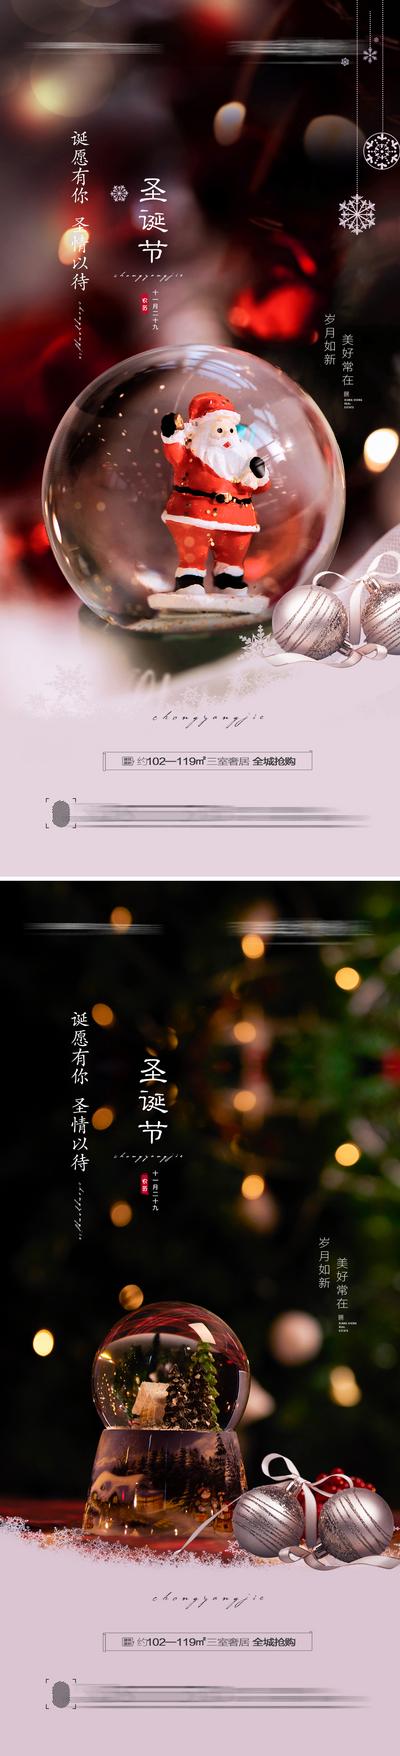 南门网 海报 房地产 公历节日 圣诞节 温馨 系列